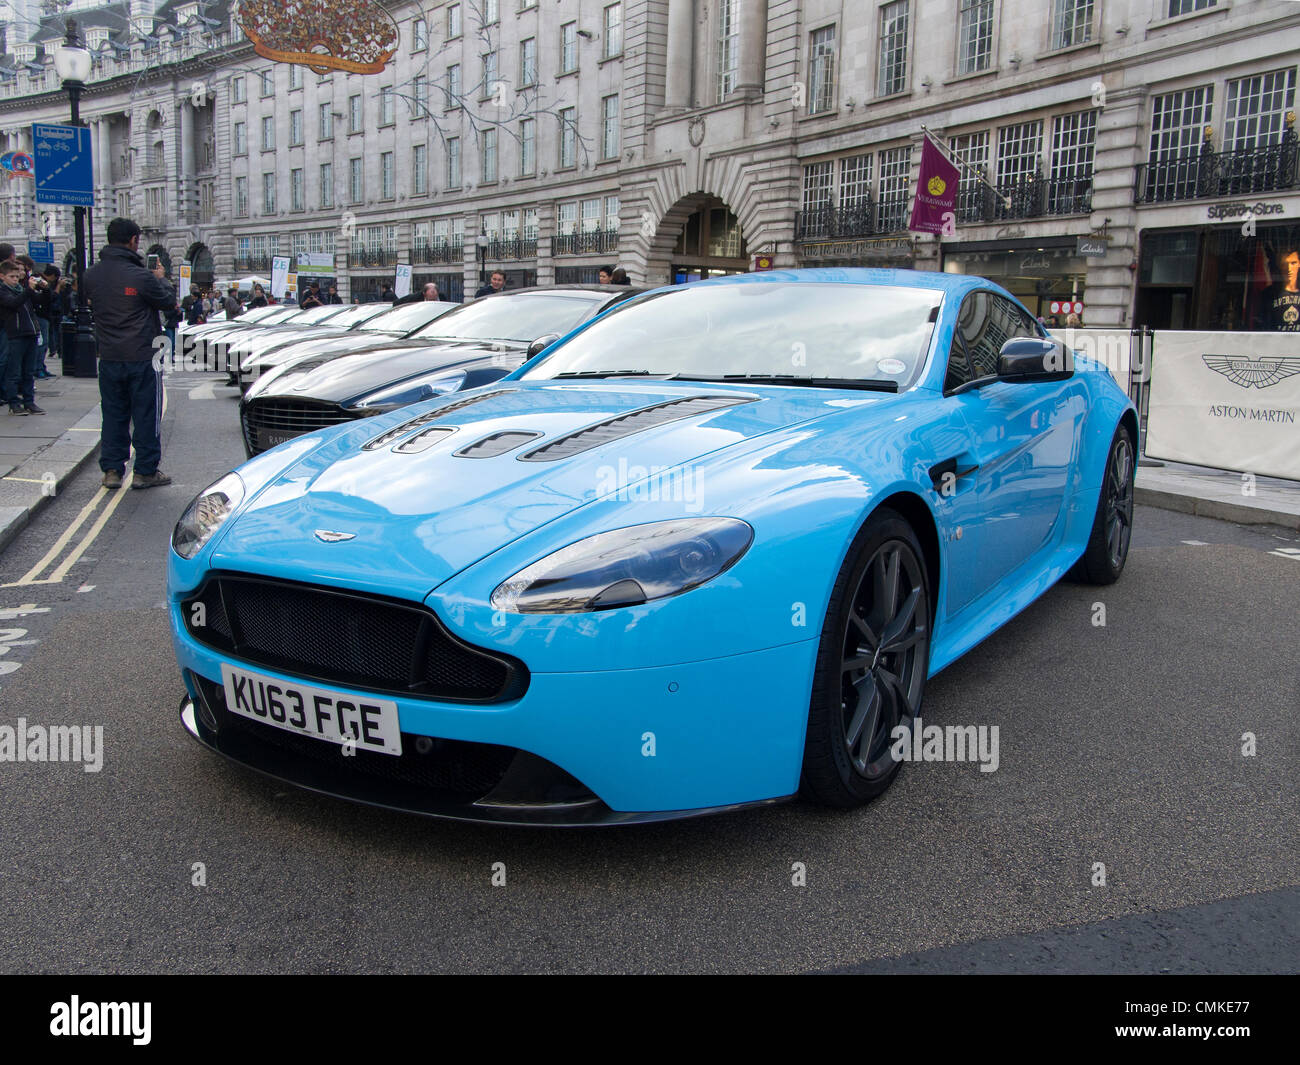 Londres, Royaume-Uni. 2 novembre 2013. Aston Martin Vantage exposée au Regents Street Motor Show de Londres UK 03/11/2013 Credit : Cabanel/Alamy Live News Banque D'Images